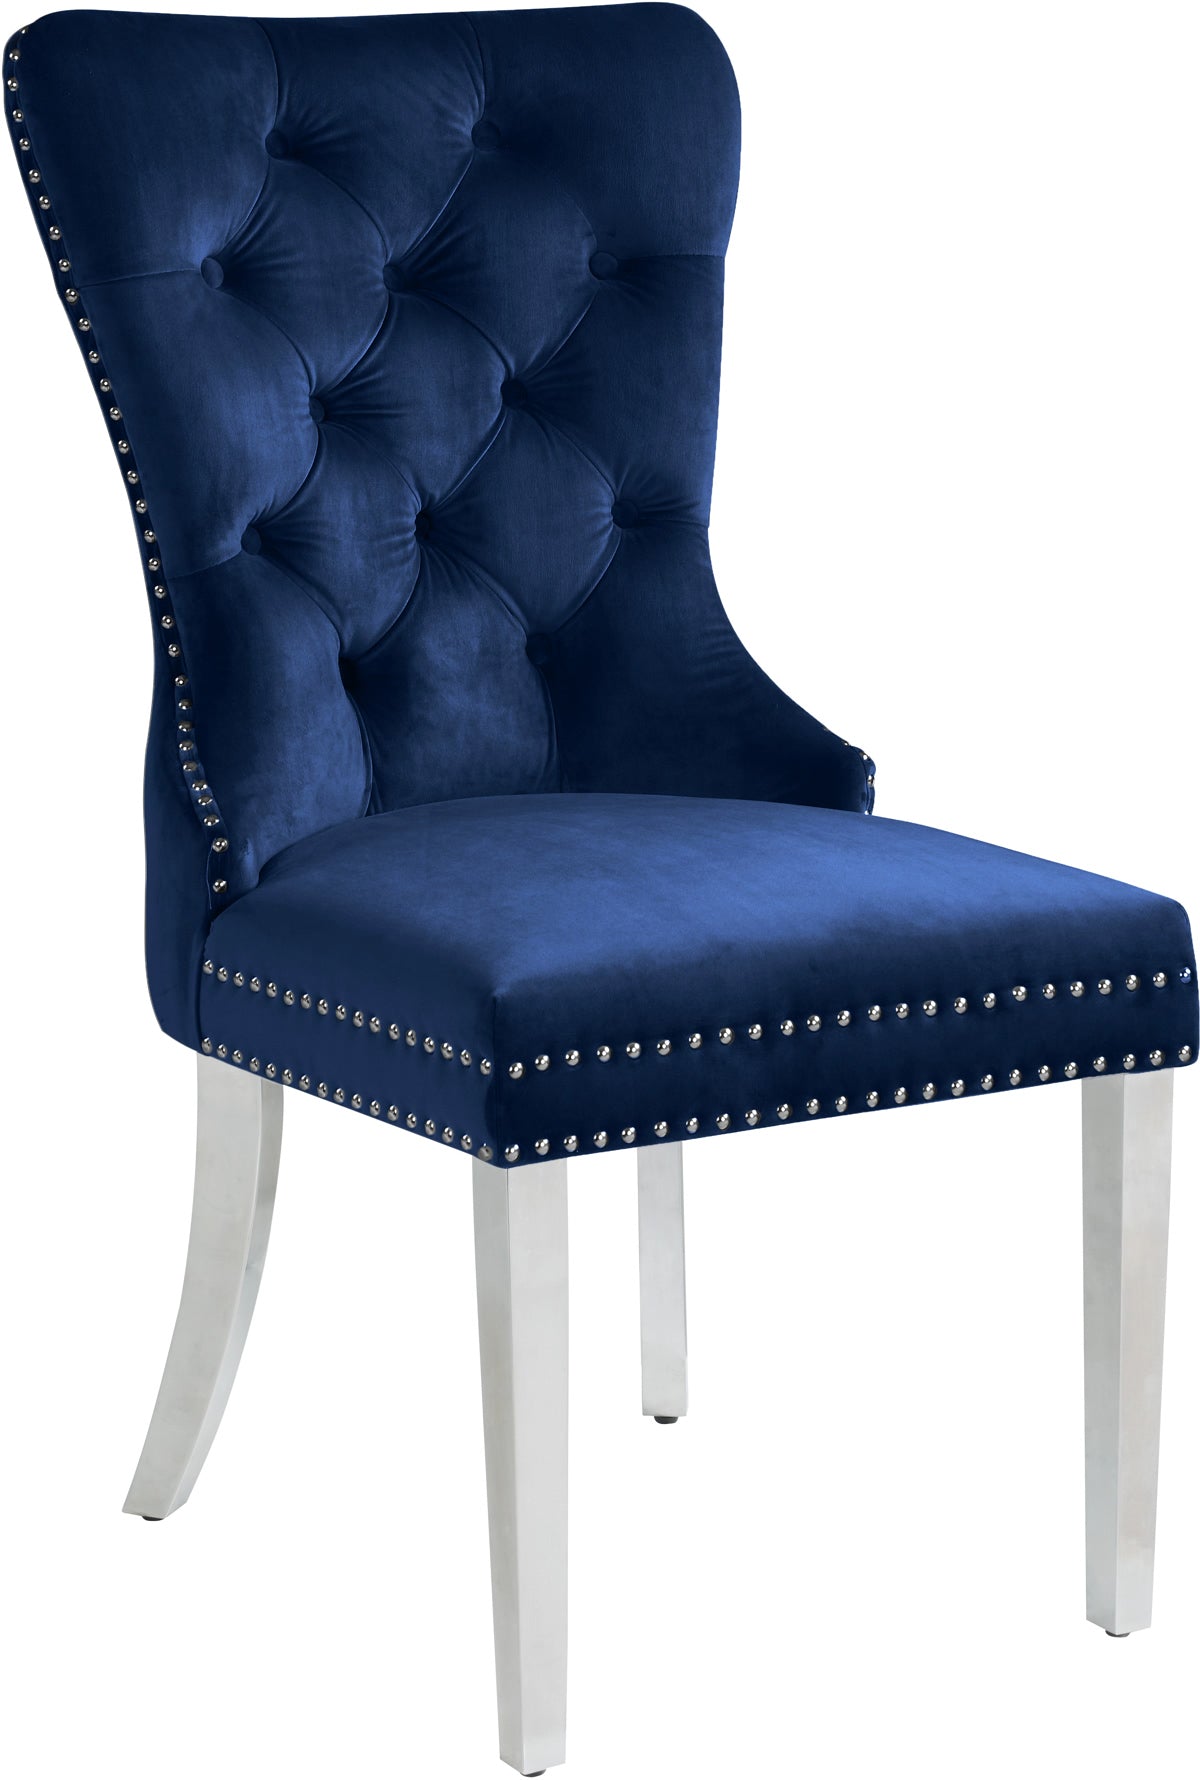 Meridian Furniture Carmen Navy Velvet Dining Chair - Set of 2